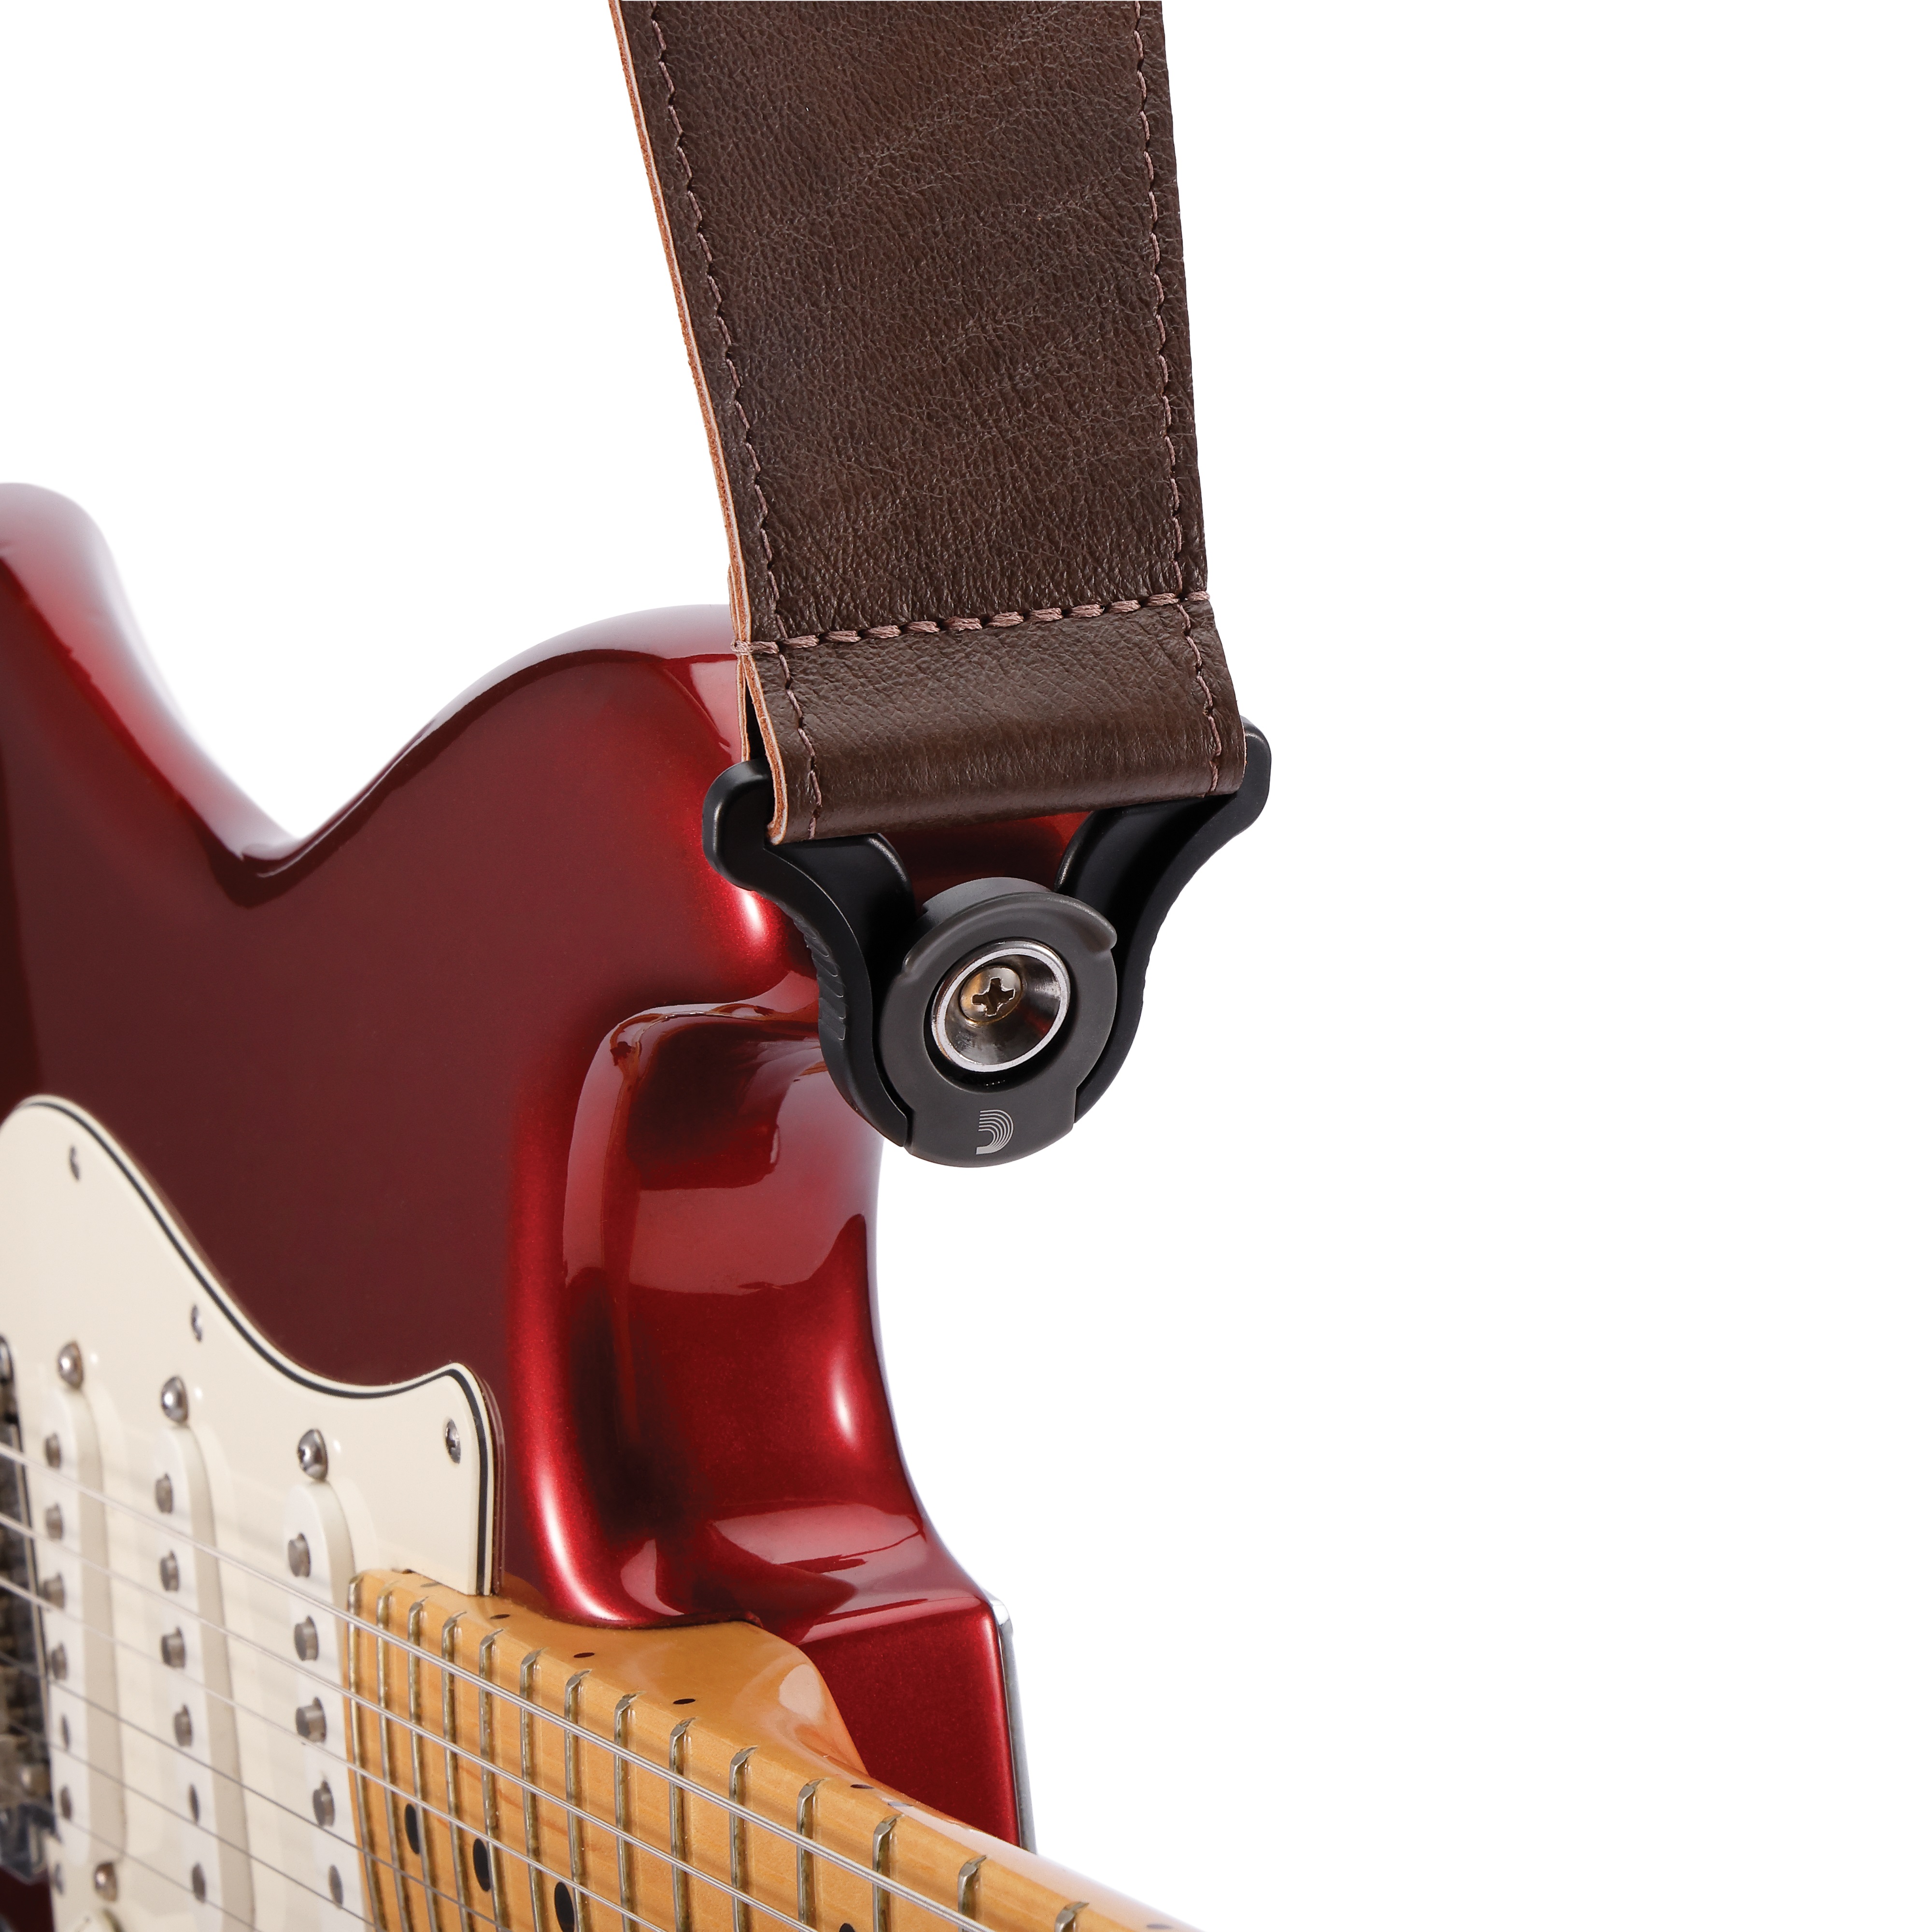 D'addario Auto Lock Cuir Guitar Strap Brown 6,3 Cm - Correa - Variation 3